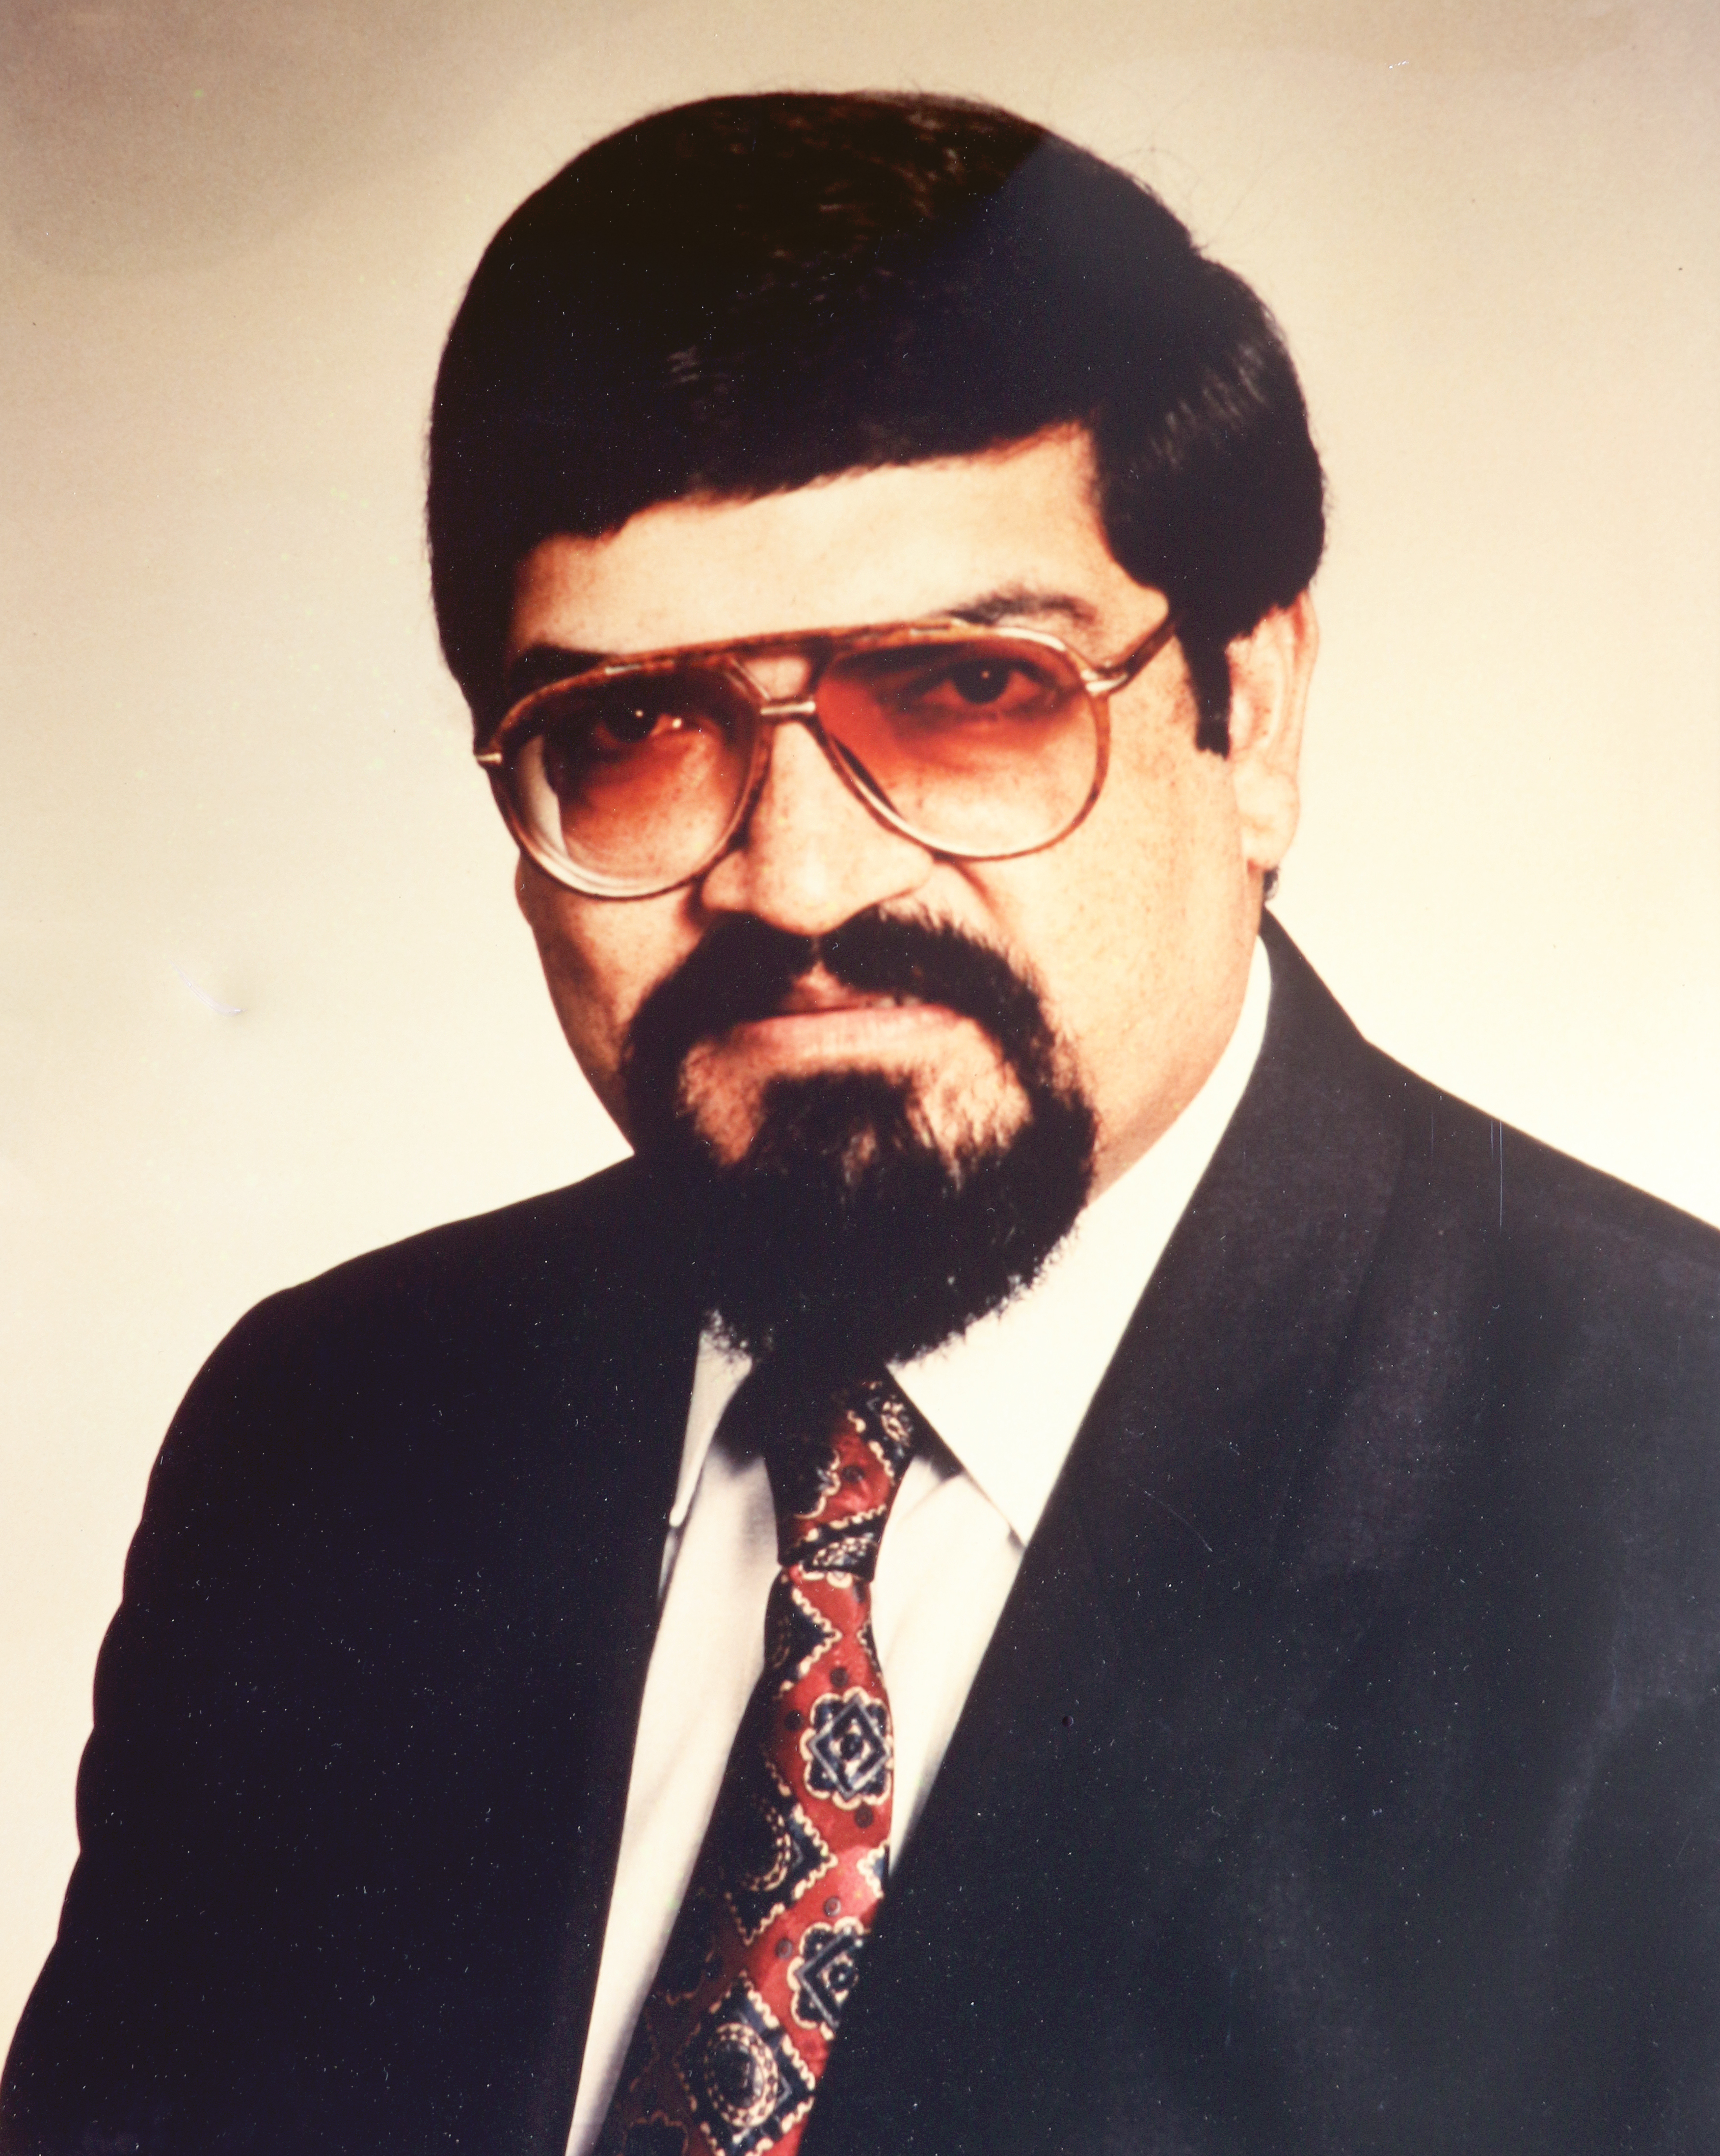 Prakash Ratilal (28.12.1981 - 24.04.1986)